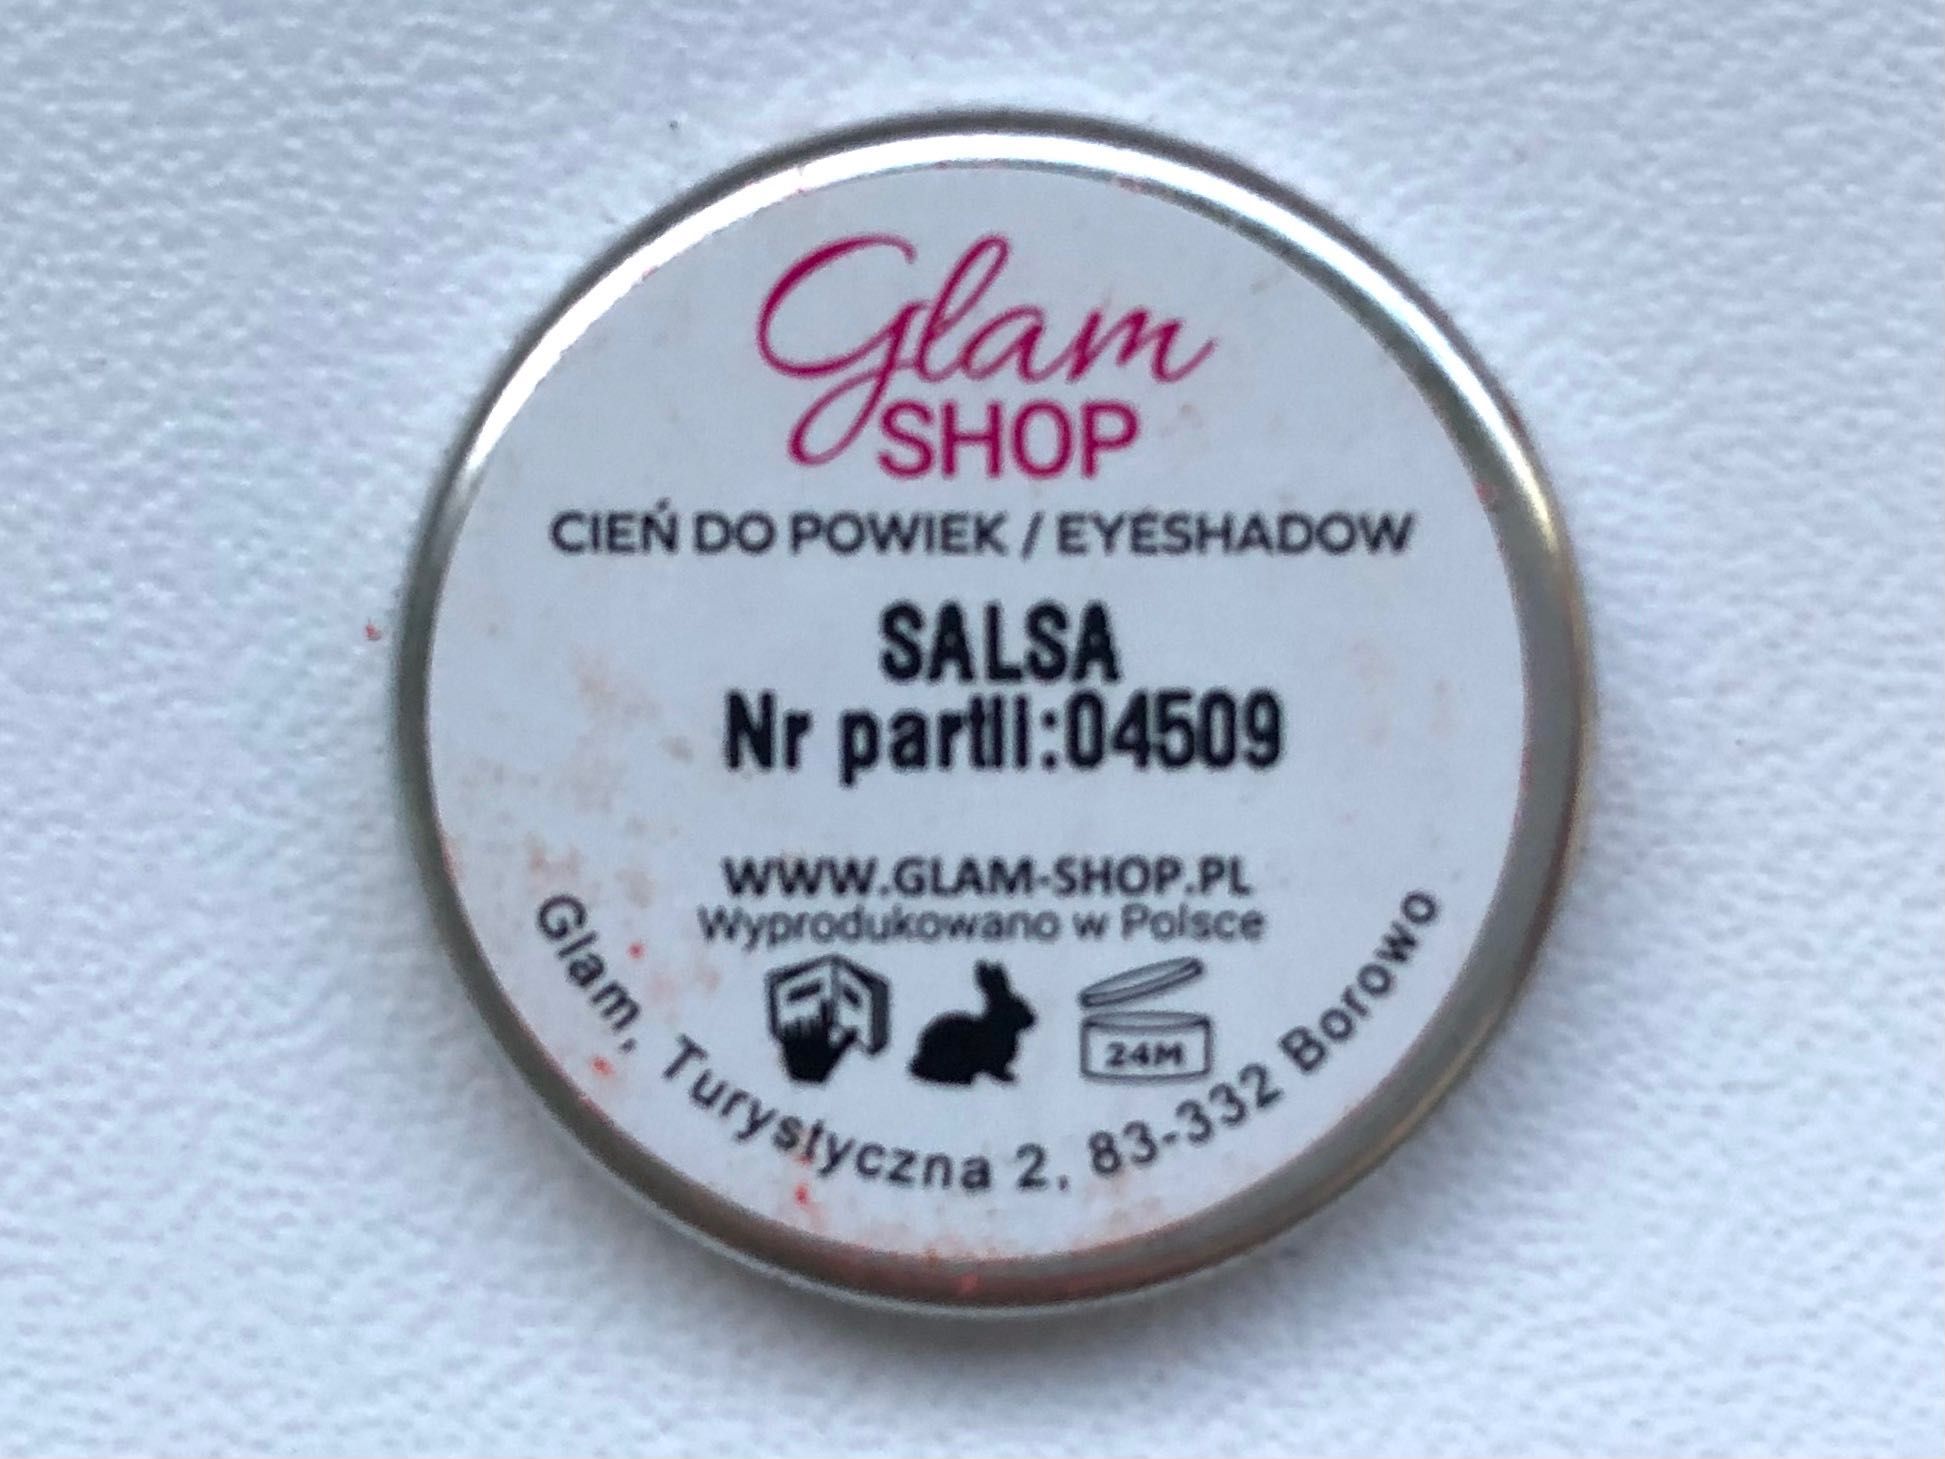 cień "Salsa" (paleta Paprika) GlamShop, Glam Shop